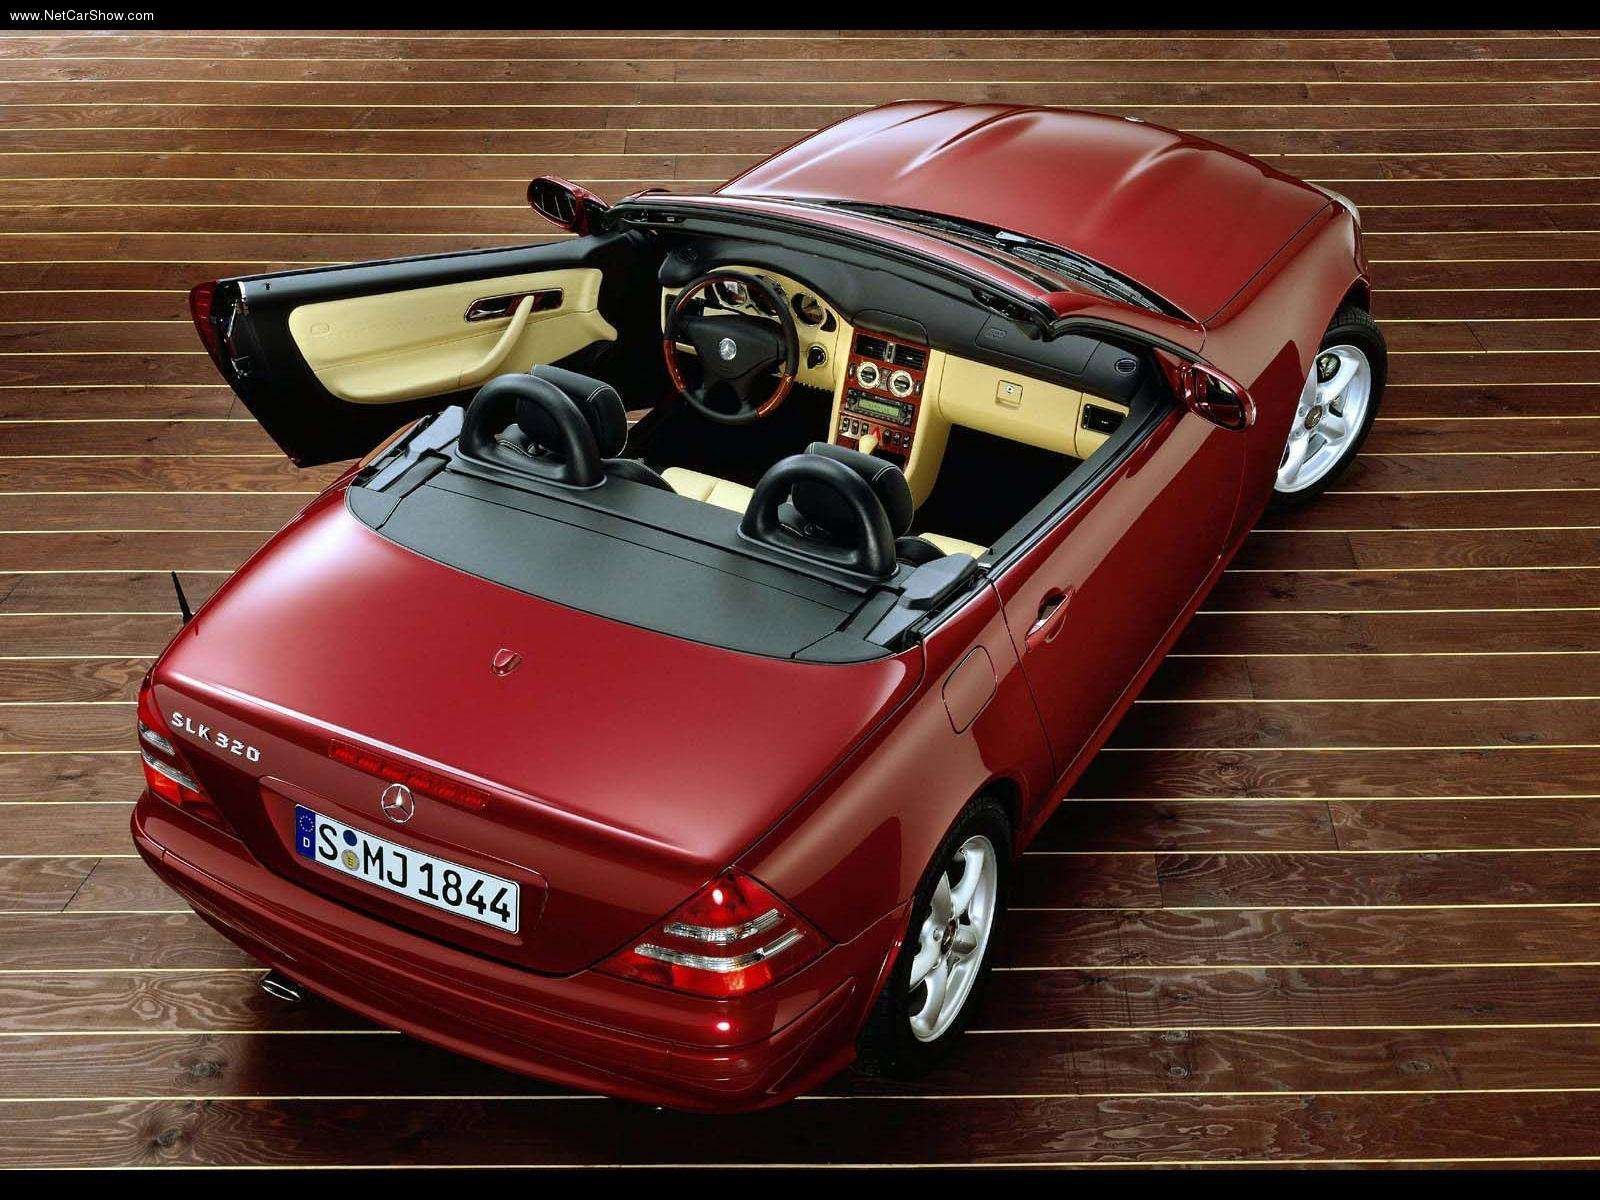 mercedes benz, Slk 320, Roadster, Cars, 2000, Kompressor Wallpaper